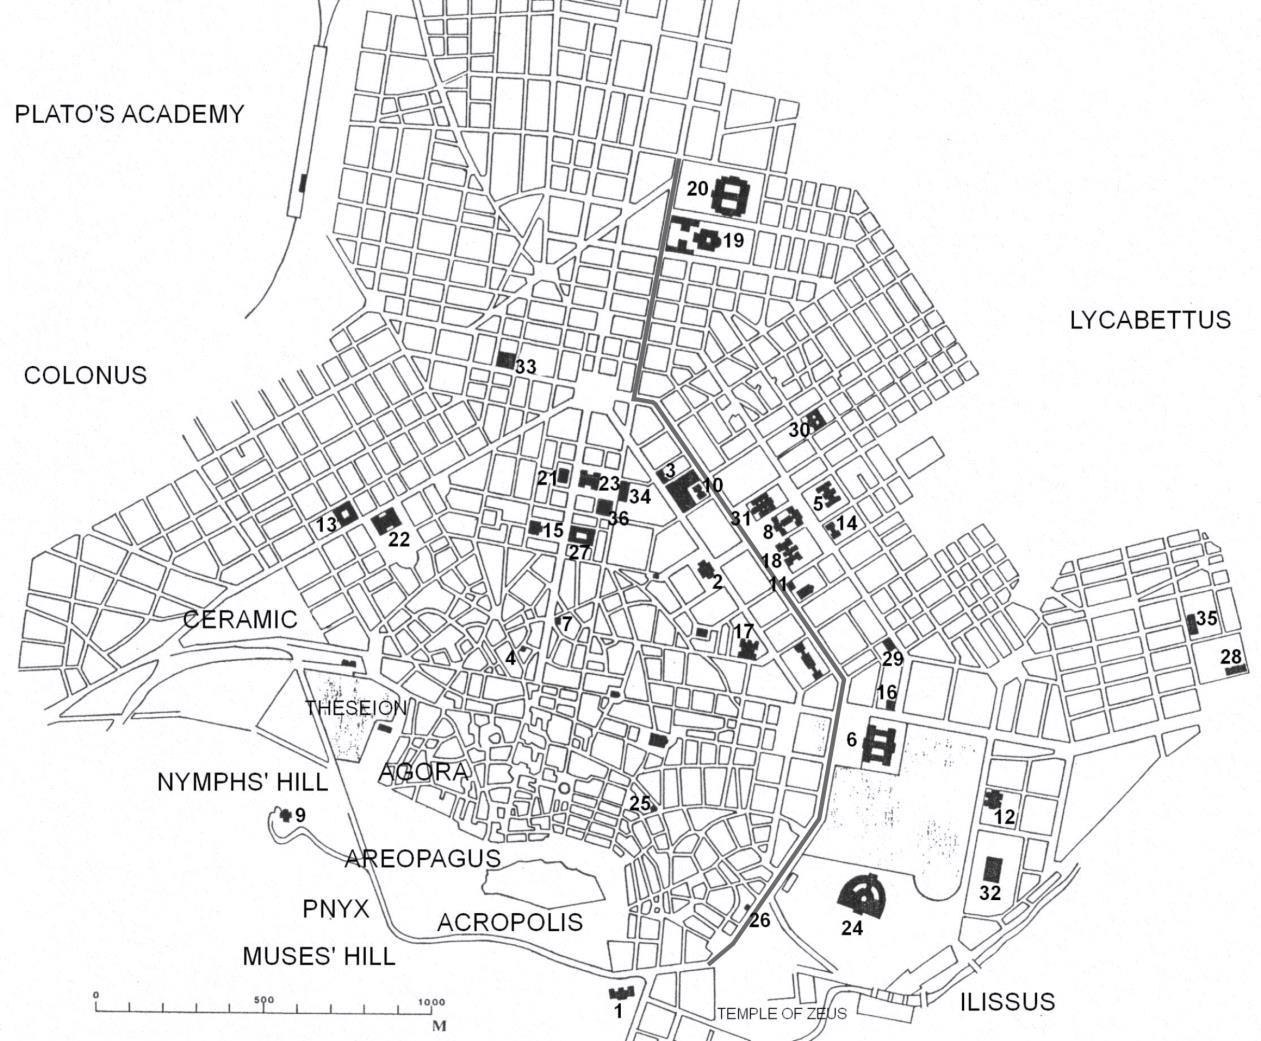 Αθήνα: η «τρίτη πλατεία» του πολεοδομικού τριγώνου δεν έγινε, με αποτέλεσμα την υποβάθμιση του δυτικού τμήματος της πόλης, πράγμα που εξηγεί τη συγκέντρωση των μνημειωδών κτηρίων στα ανατολικά.